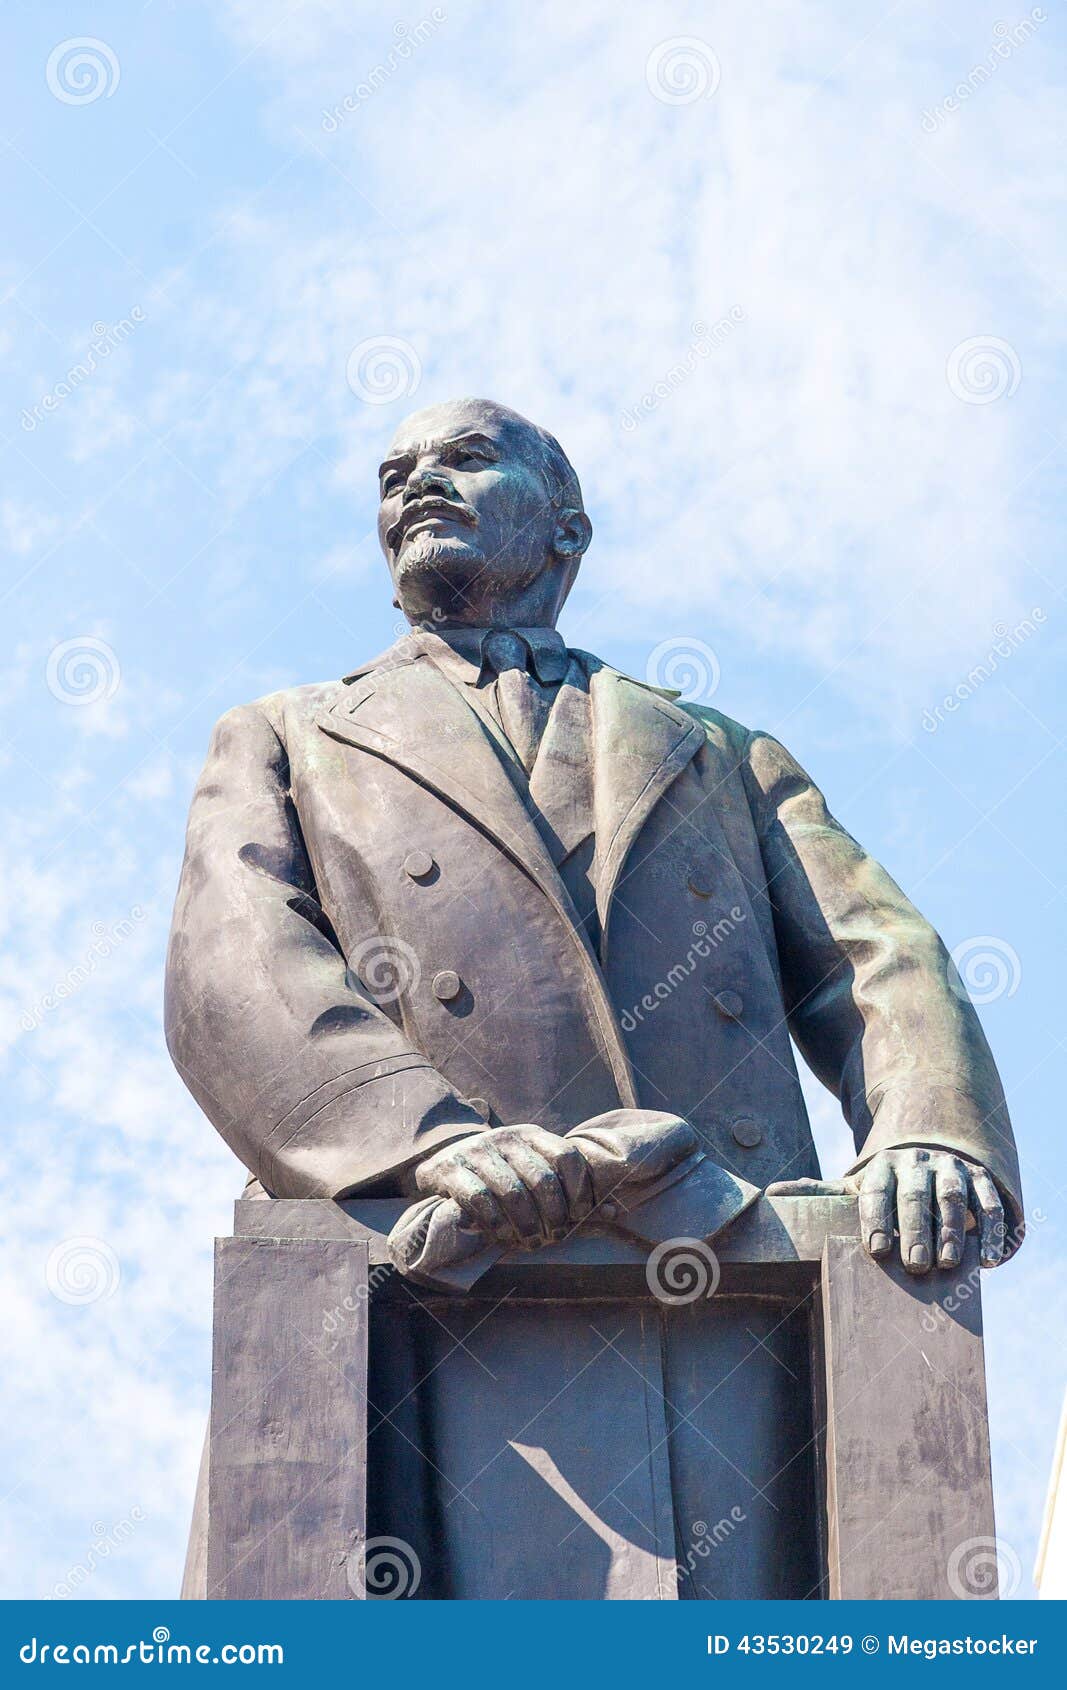 statue-lenin-minsk-bronze-vladimin-belarus-43530249.jpg